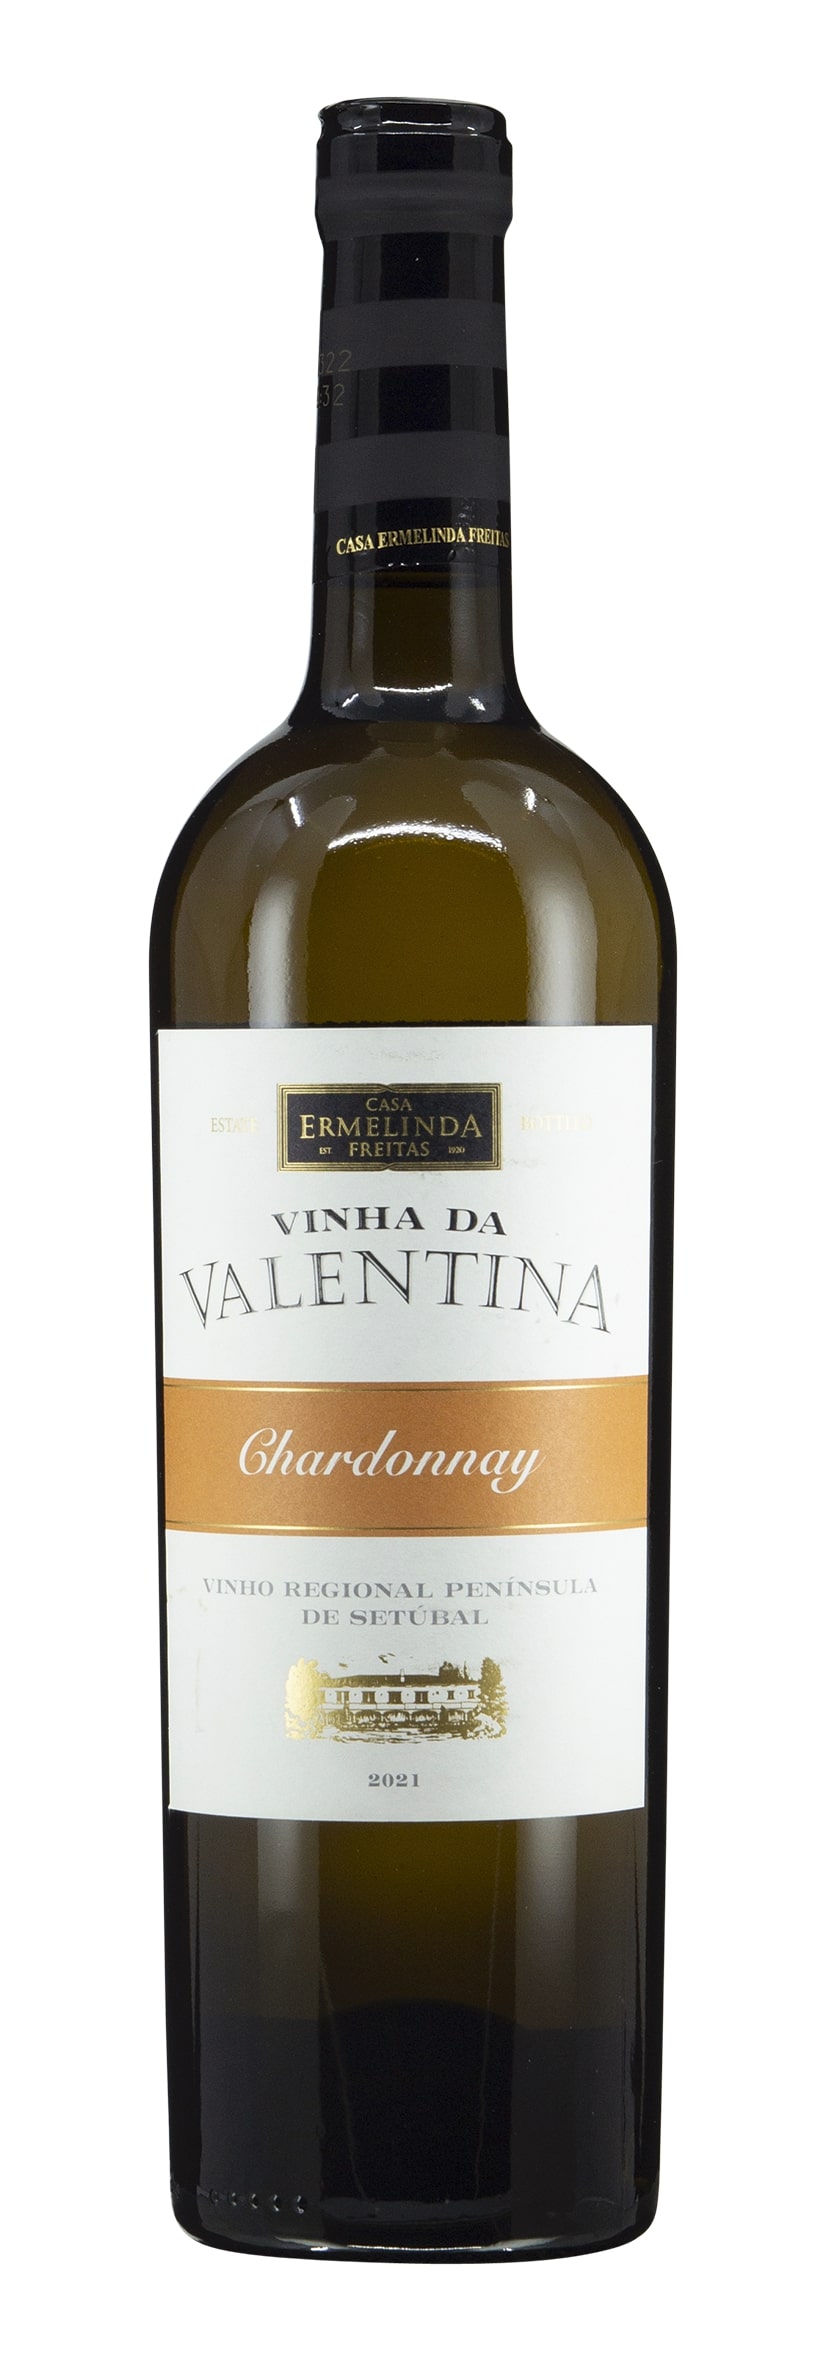 VR Península de Setúbal Chardonnay Vinha da Valentina 2021